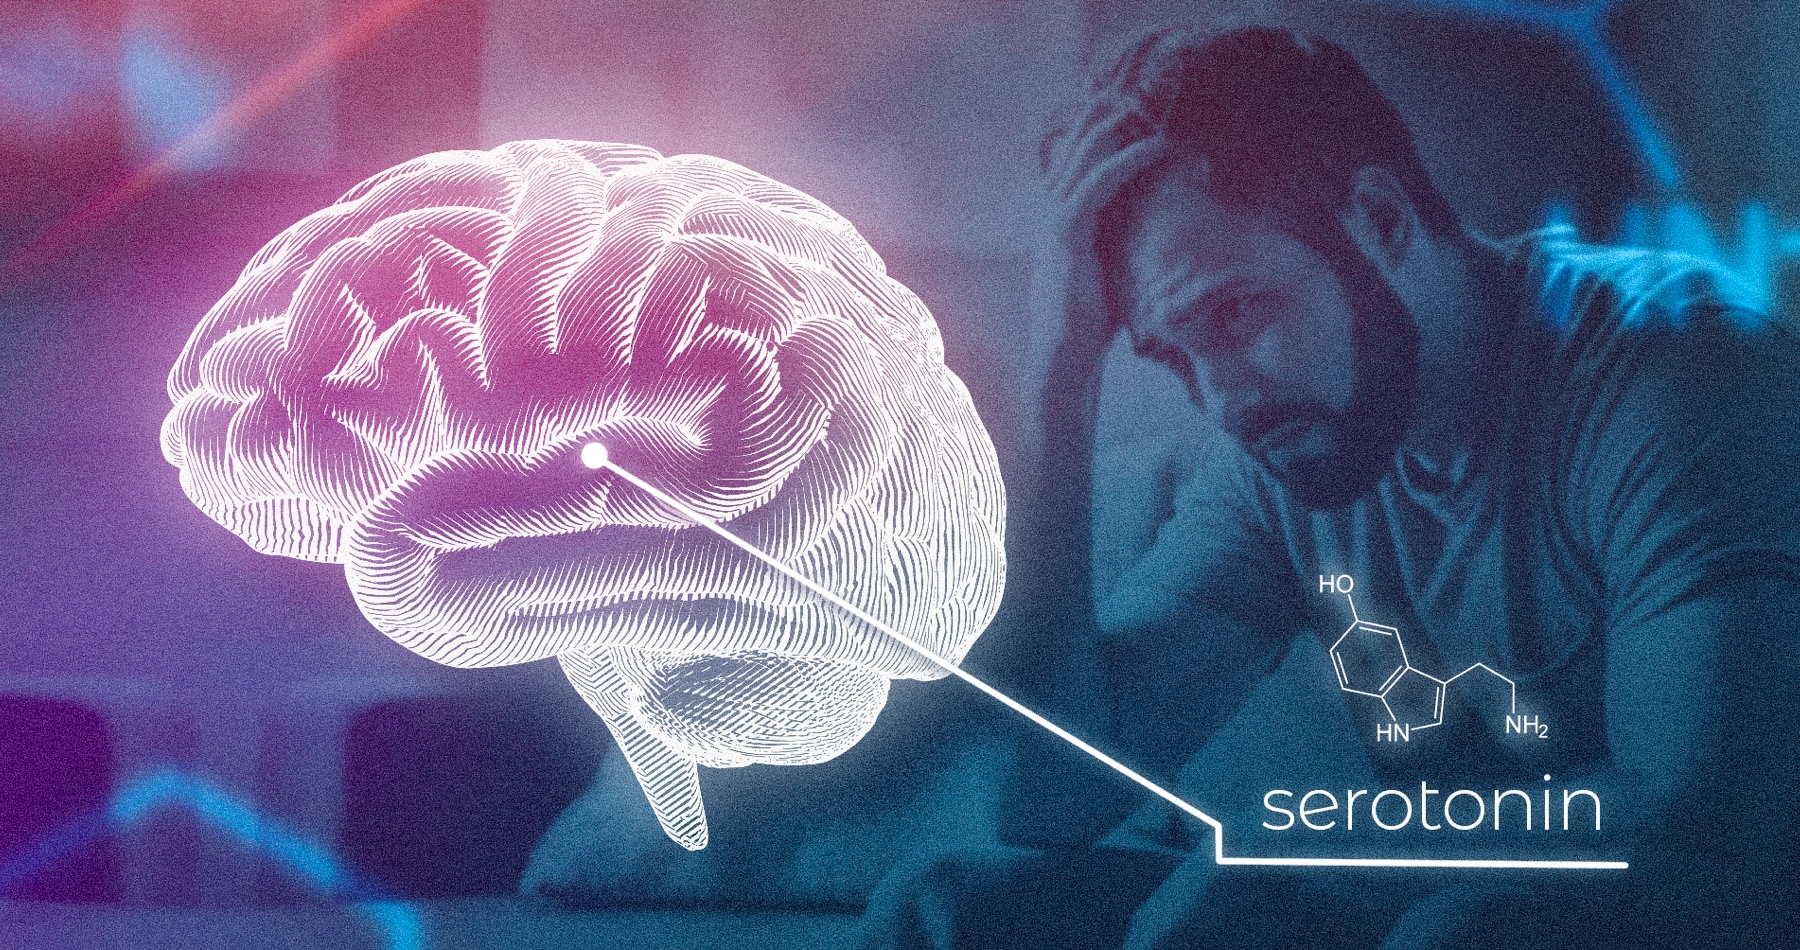 Deprese způsobují nepříznivé životní situace, ne úbytek serotoninu, odhaluje nová studie zpochybňující tvrzení, že antidepresiva fungují tak, že napravují chemickou nerovnováhu v mozku